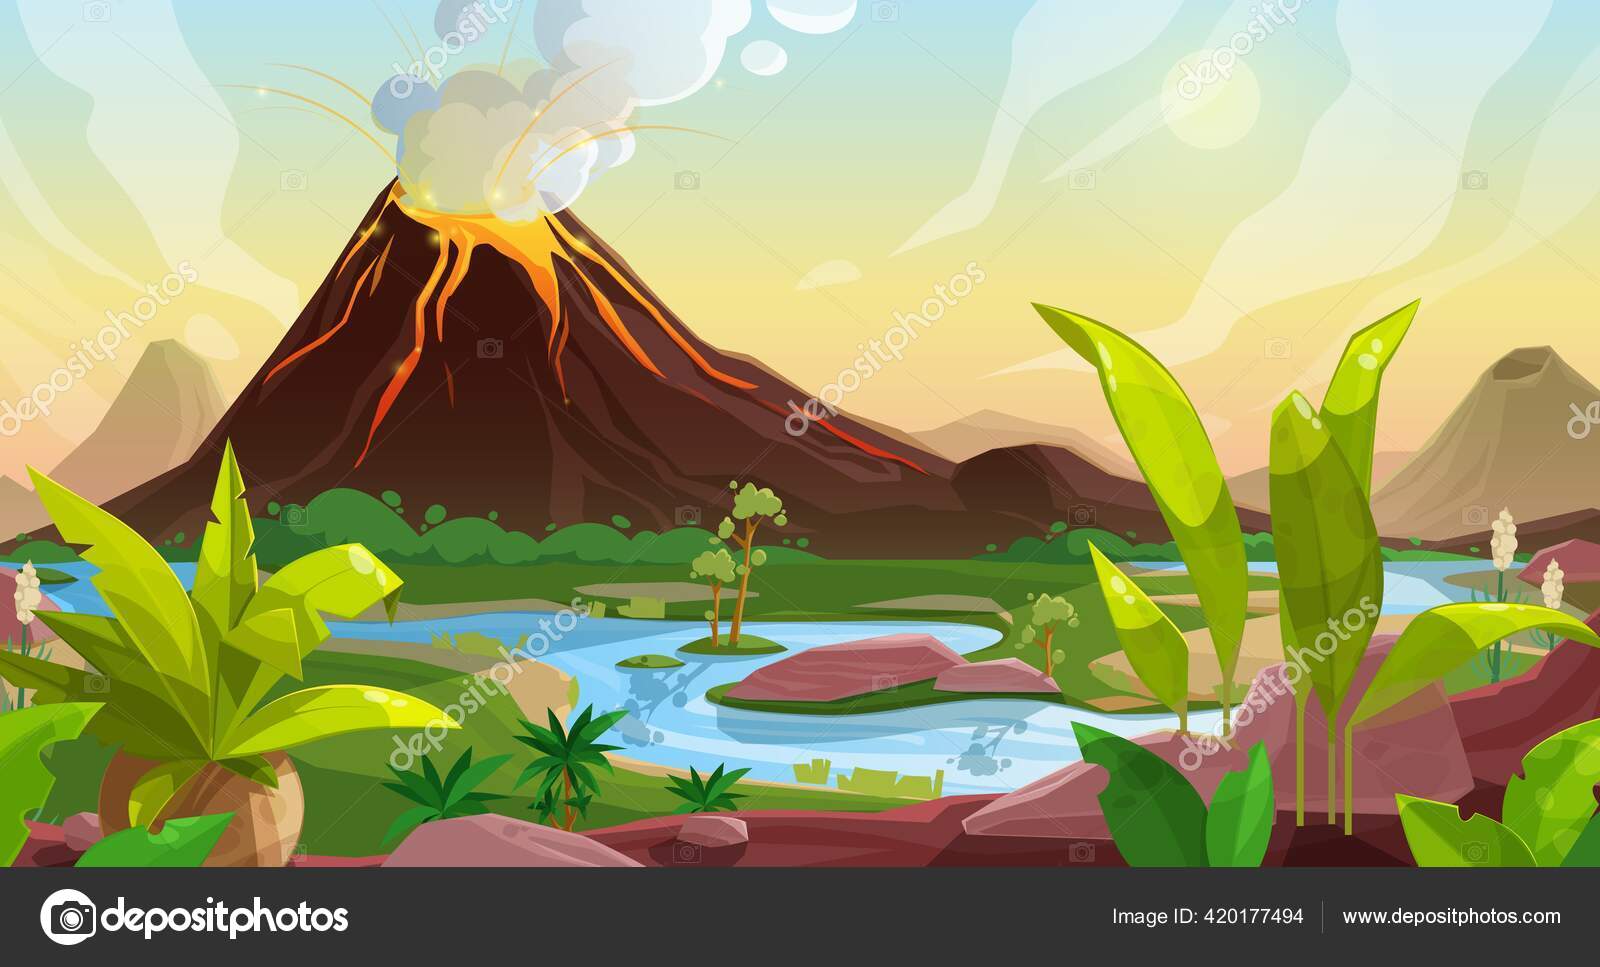 Khoảnh khắc núi lửa phun trào là sự kiện kỳ diệu của thiên nhiên, bạn sẽ khám phá trọn vẹn nét đẹp hoang dã và nhiều màu sắc của sự phun trào này.